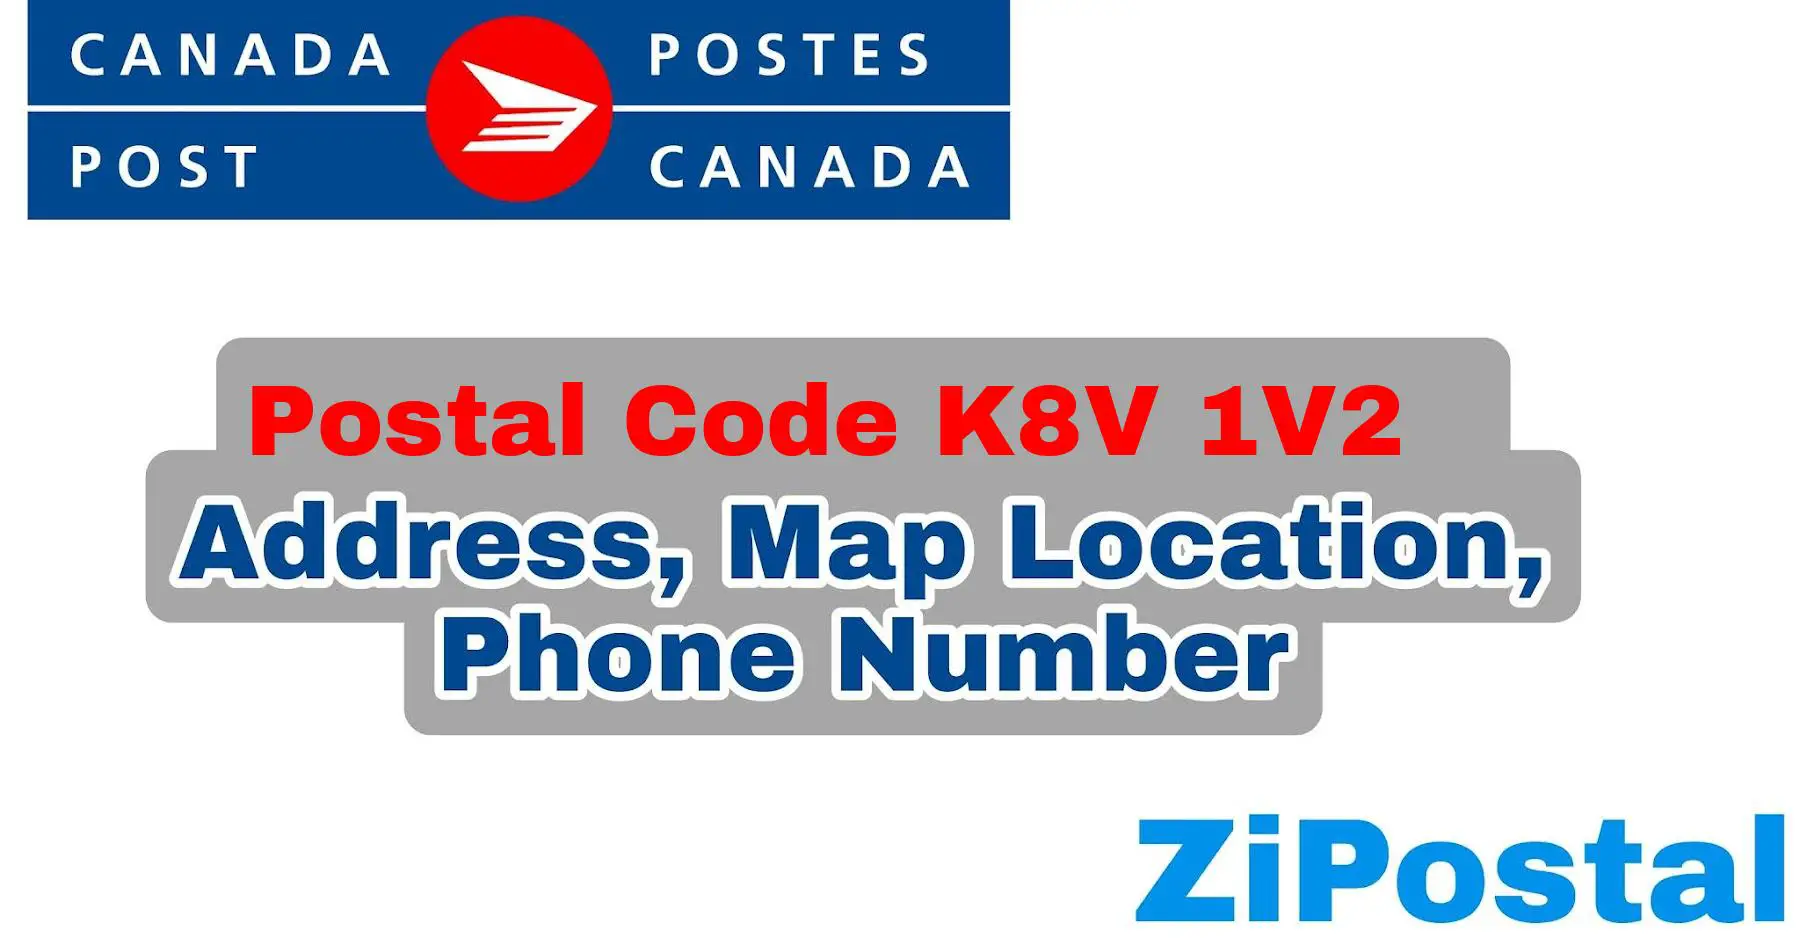 Postal Code K8V 1V2 Address Map Location and Phone Number